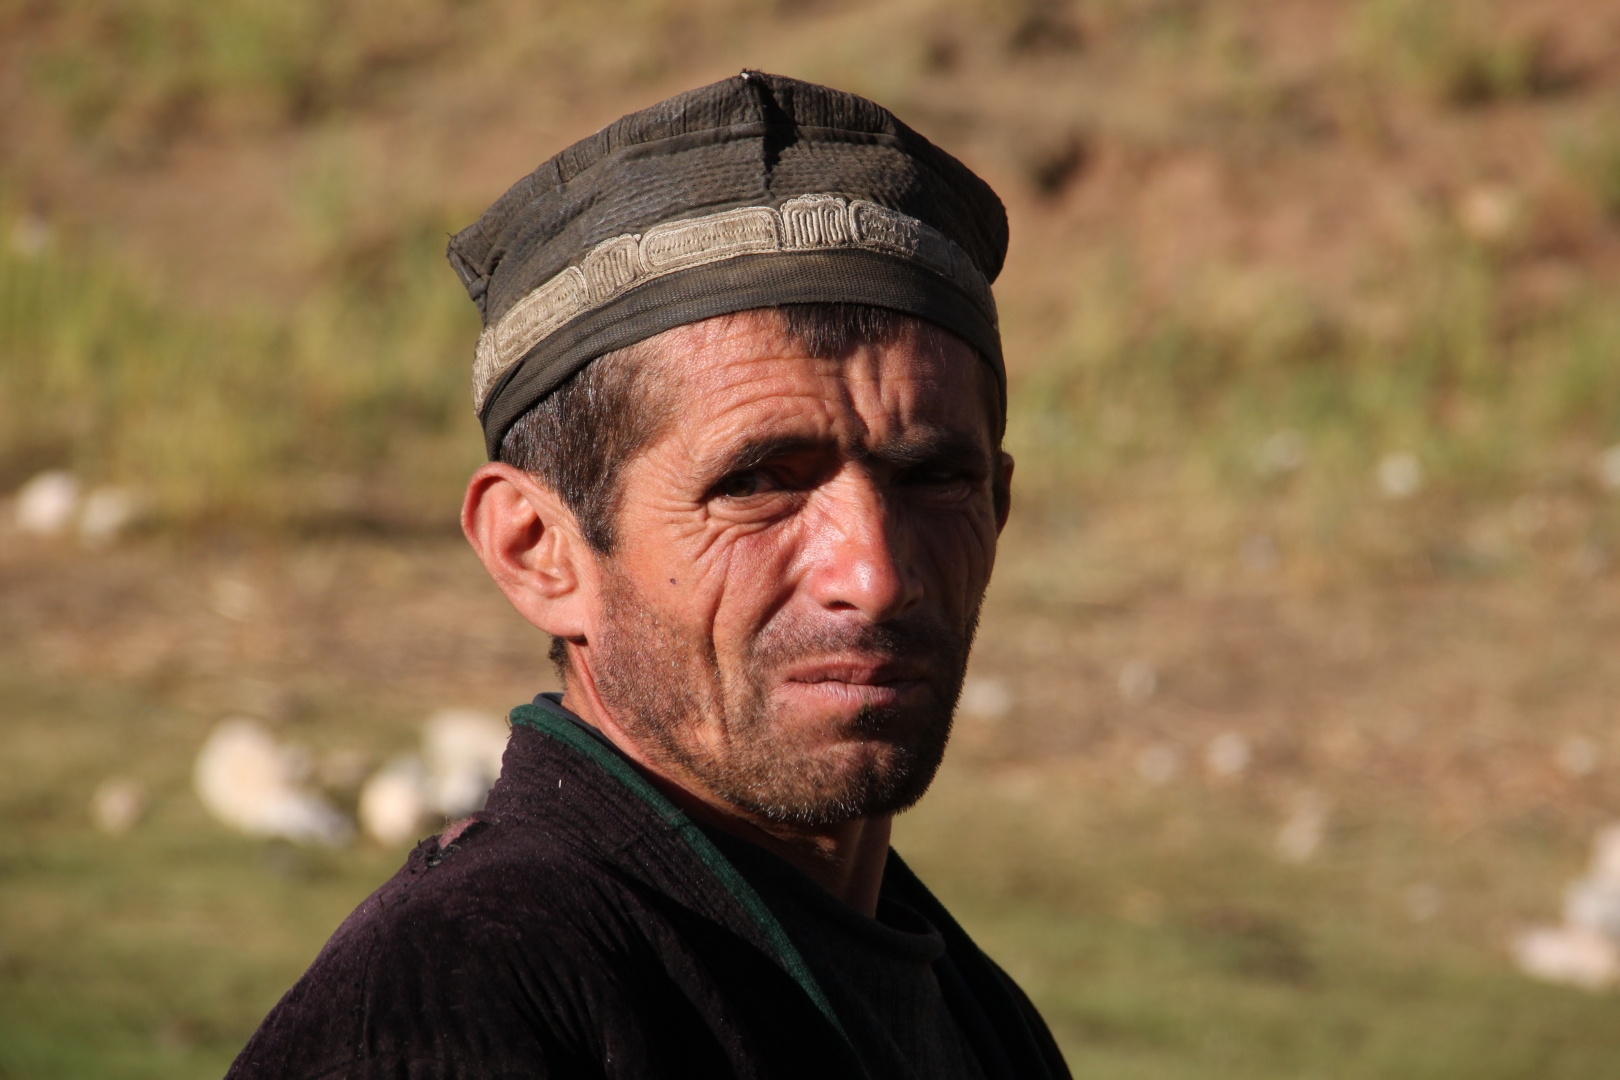 Картинка мужик таджик